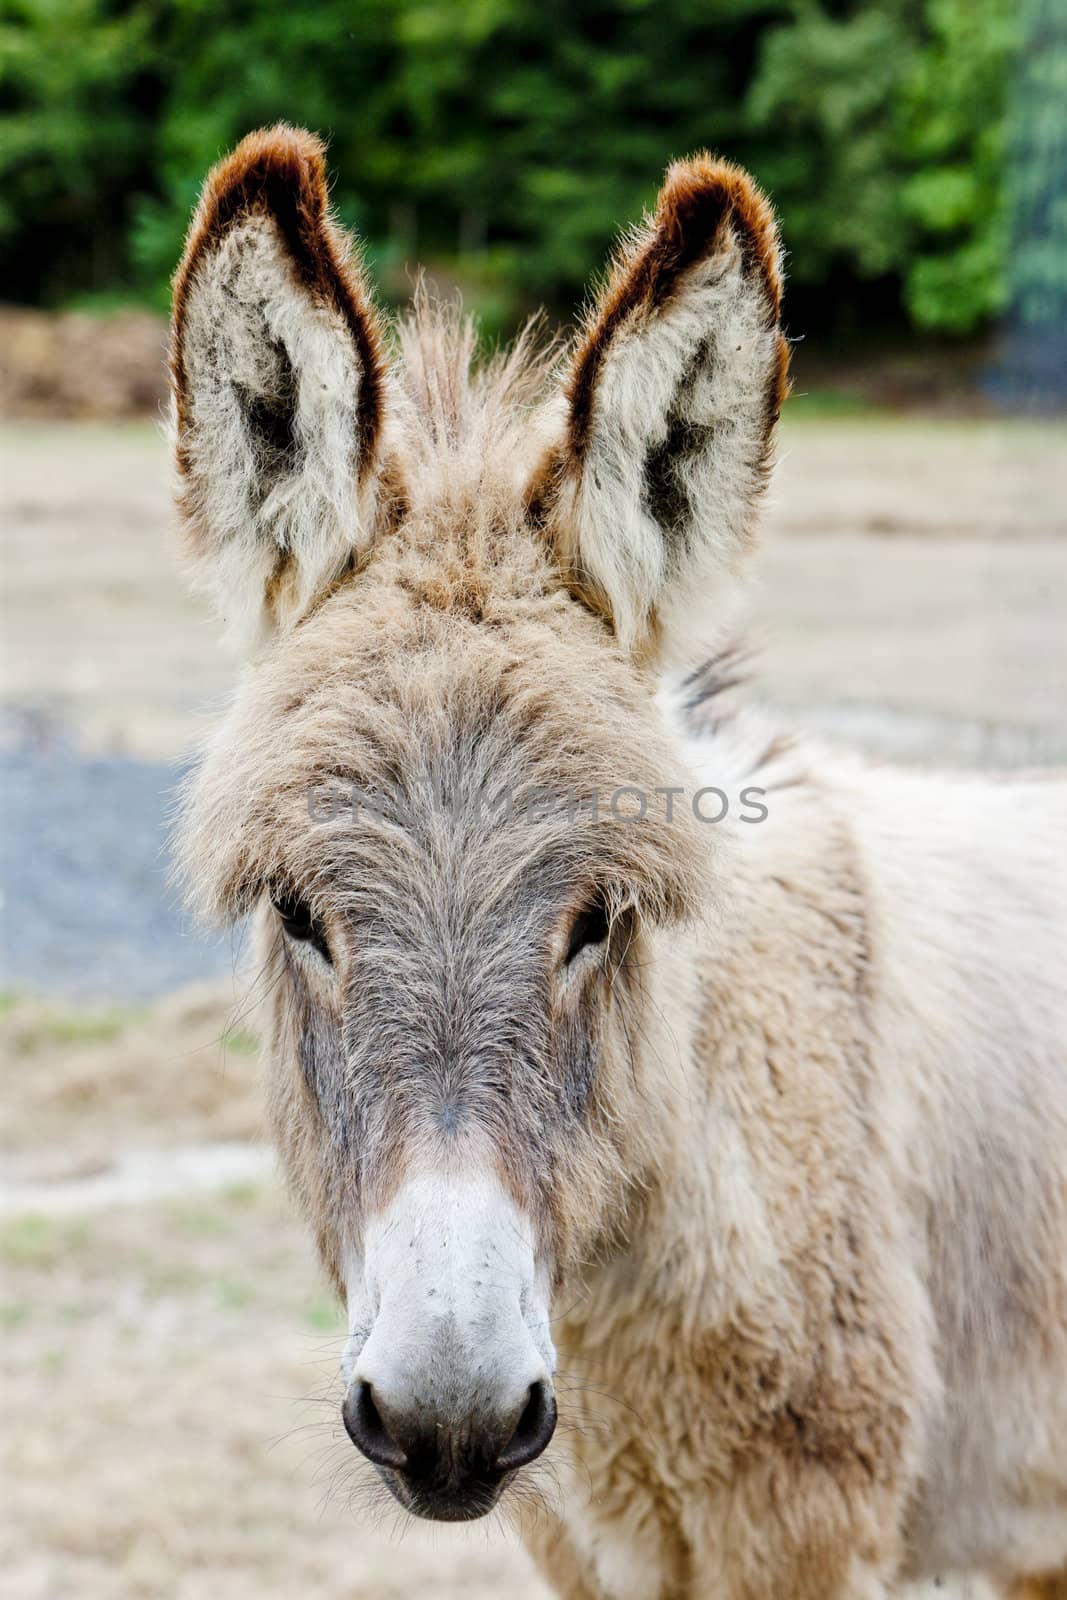 donkey, Navarre, Spain by phbcz